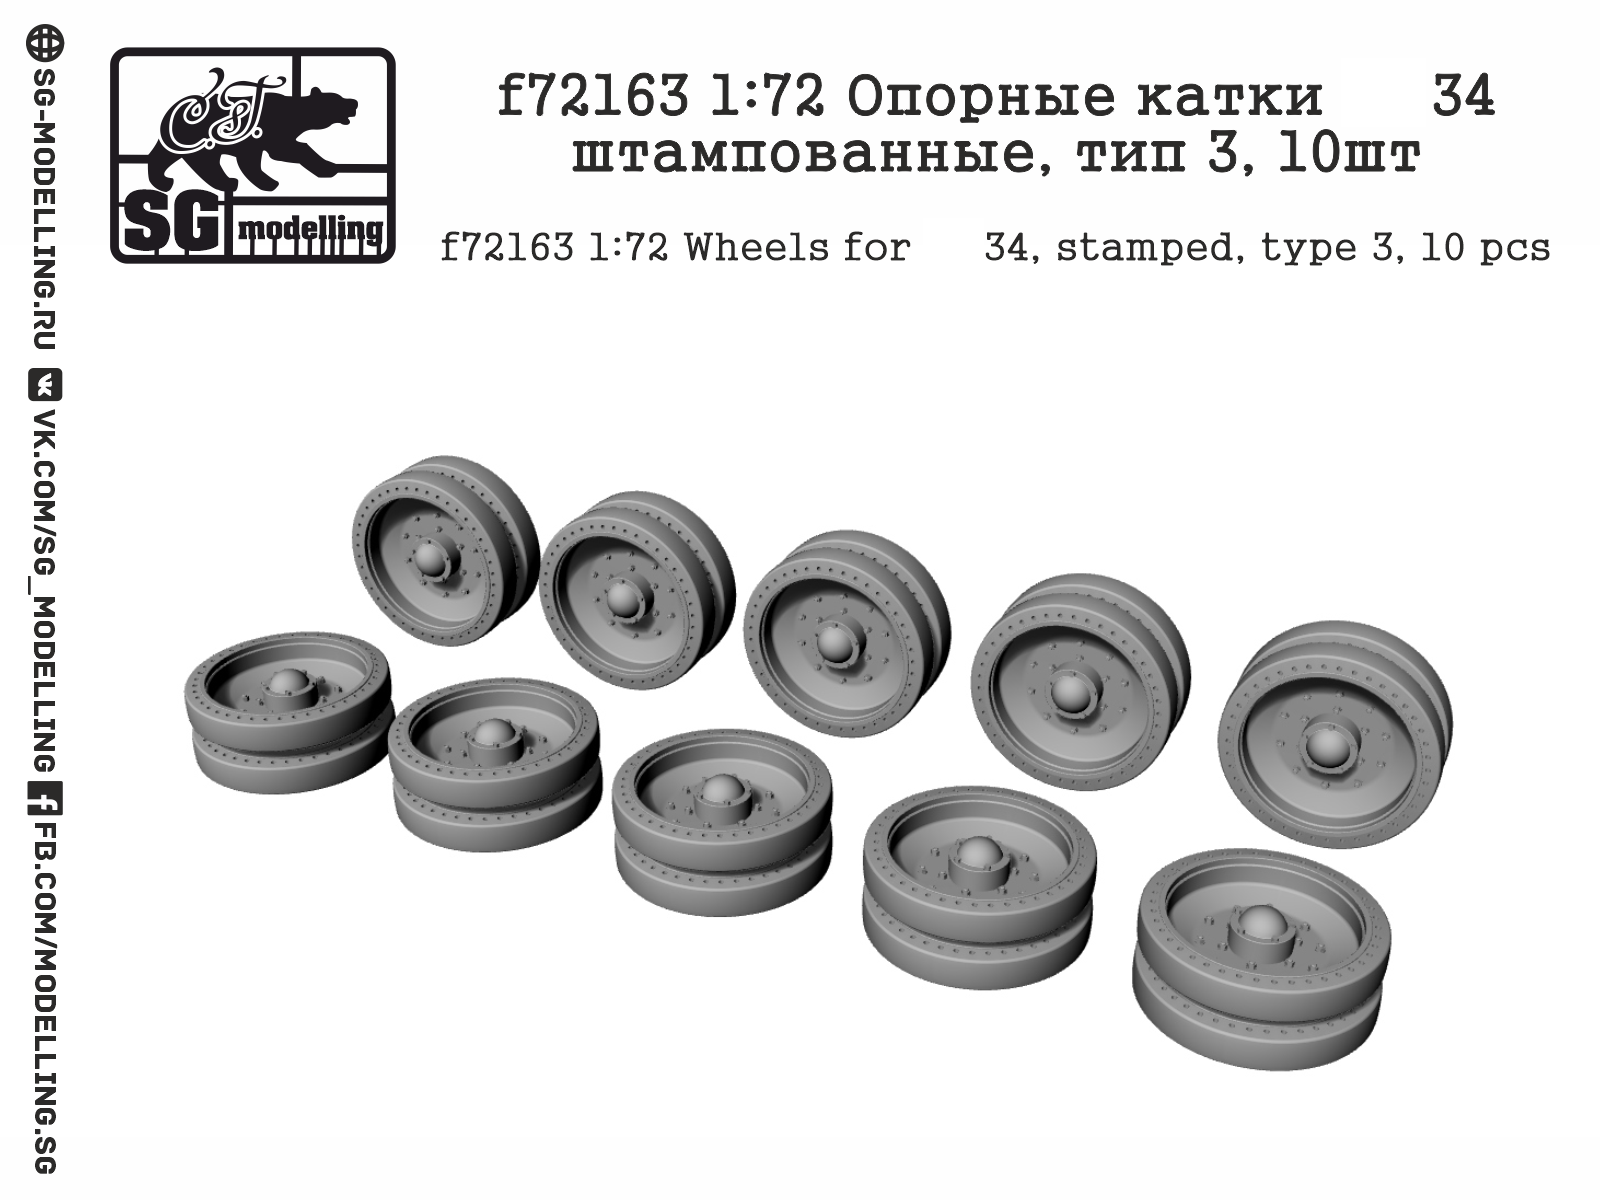 f72163  дополнения из смолы  Опорные катки Танк-34 штампованные, тип 3, 10шт  (1:72)